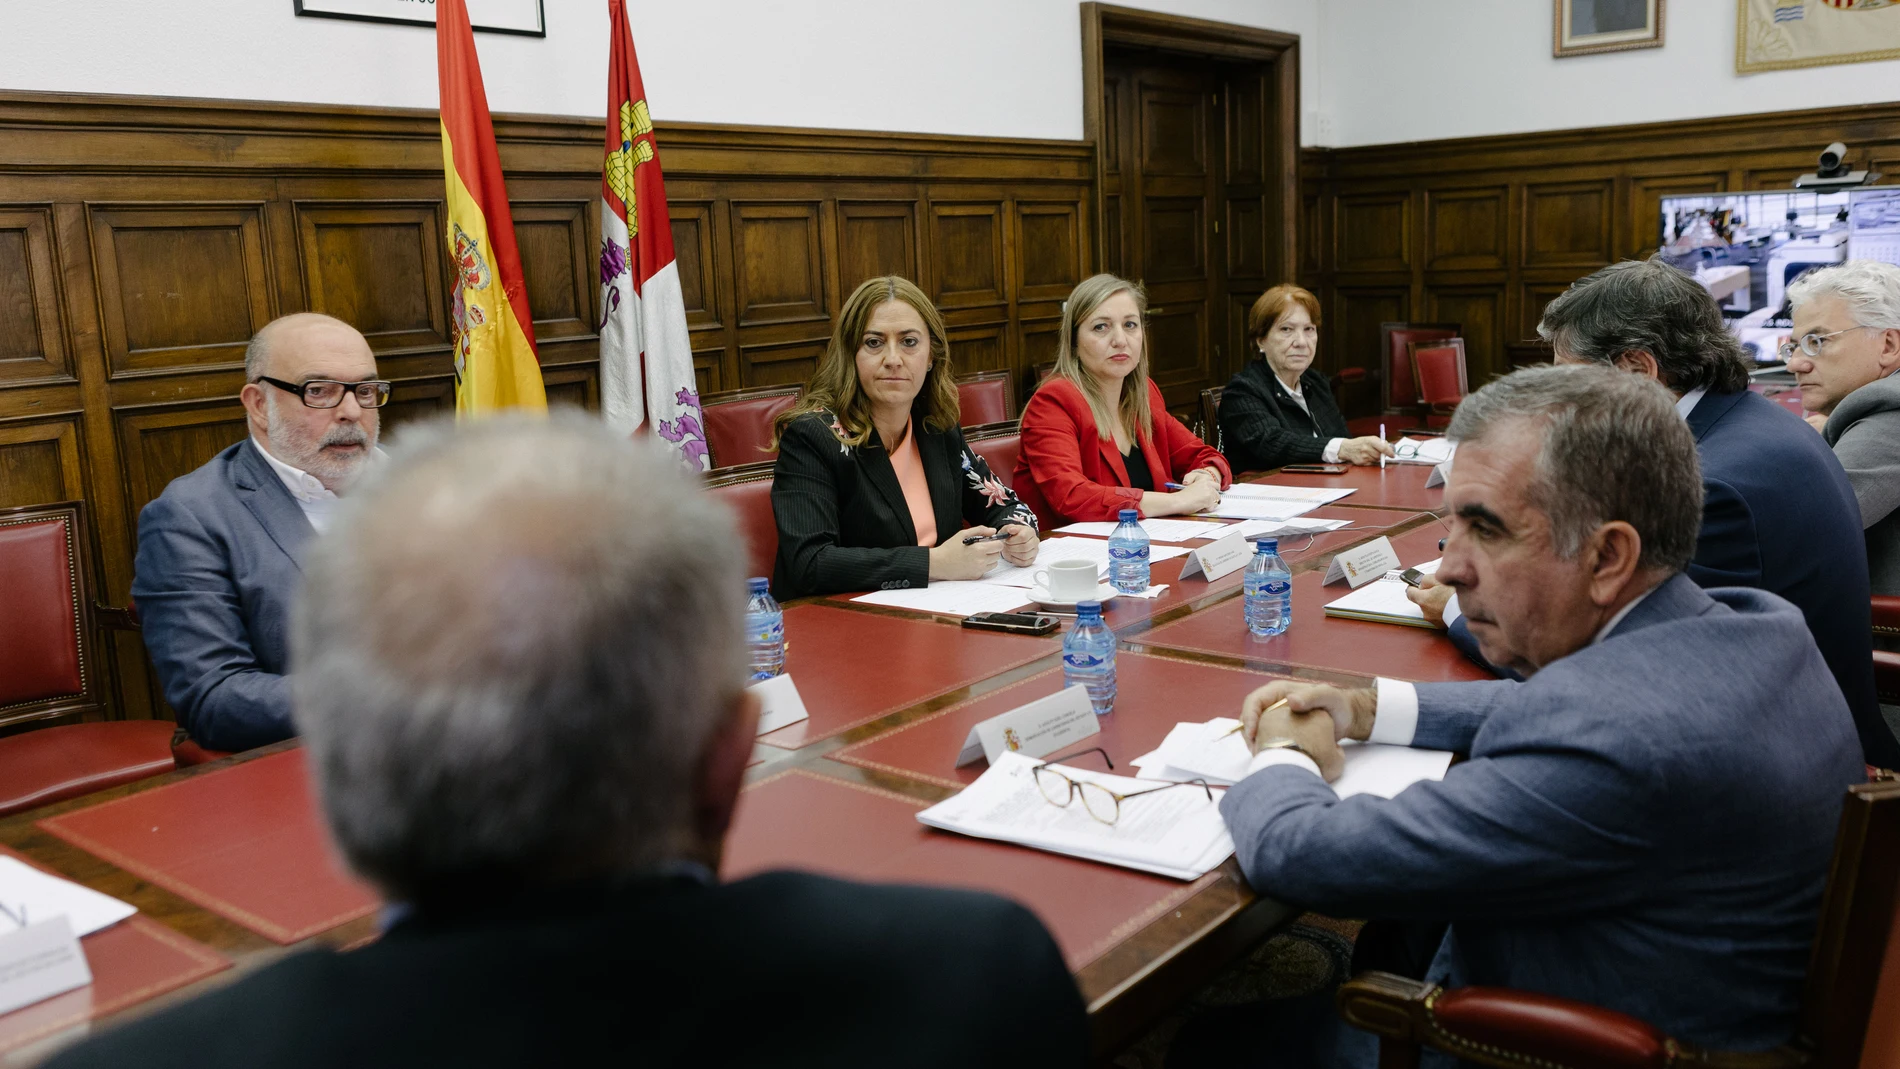 La delegada del Gobierno en Castilla y León, Virginia Barcones, preside la Comisión autonómica de Tr�áfico, Seguridad Vial y Movilidad Sostenible